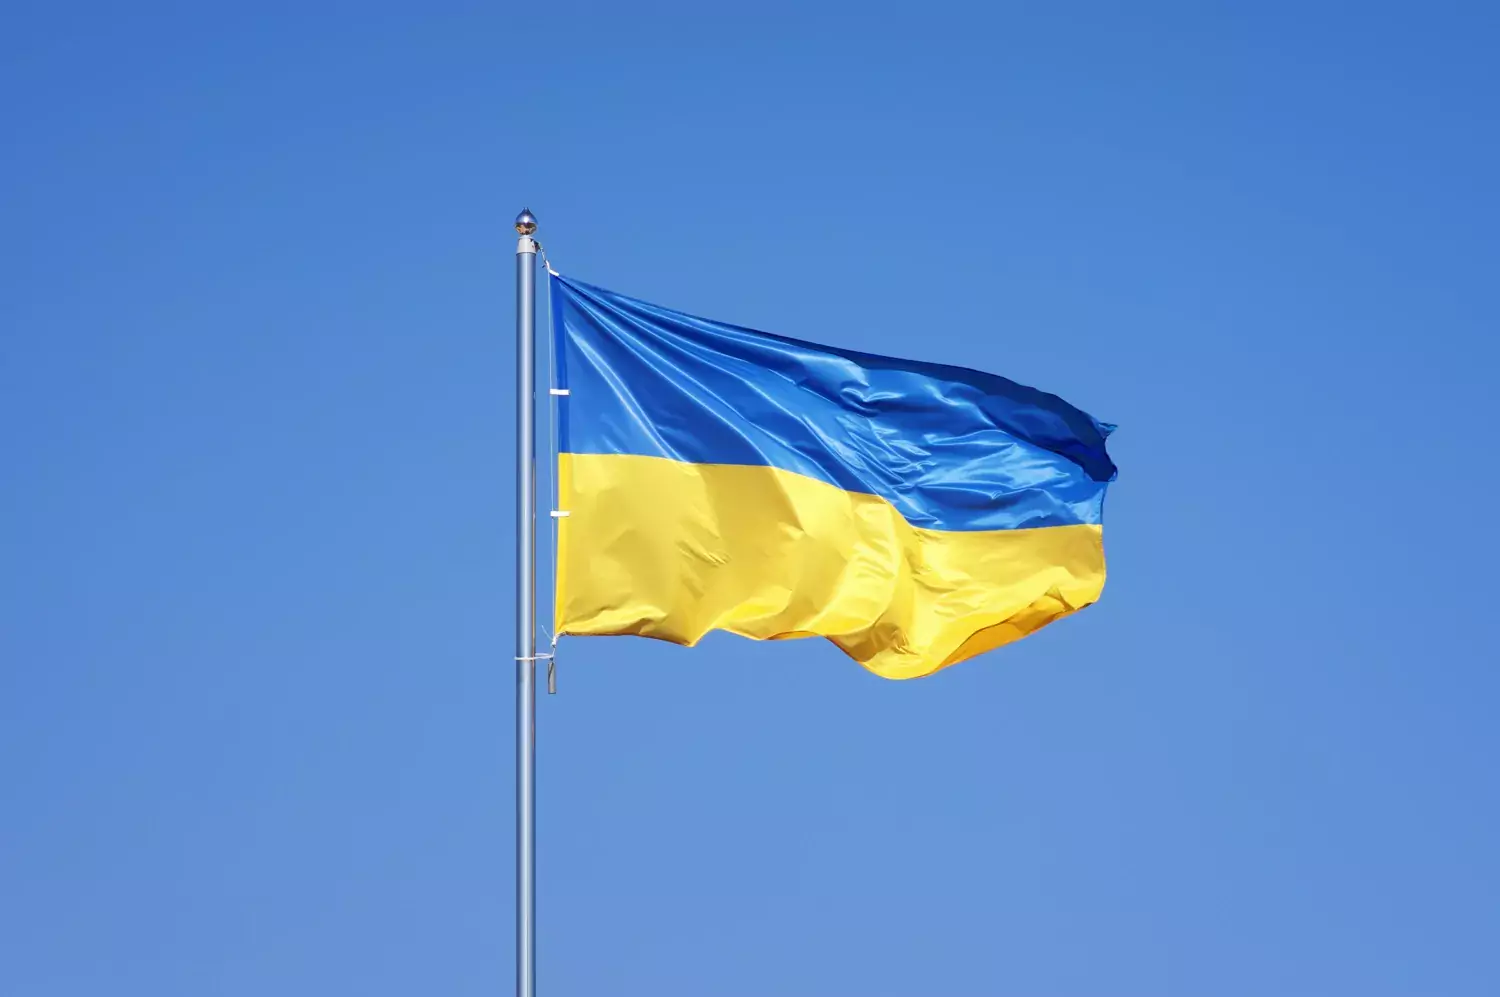 Ukraine's flag against a blue sky.